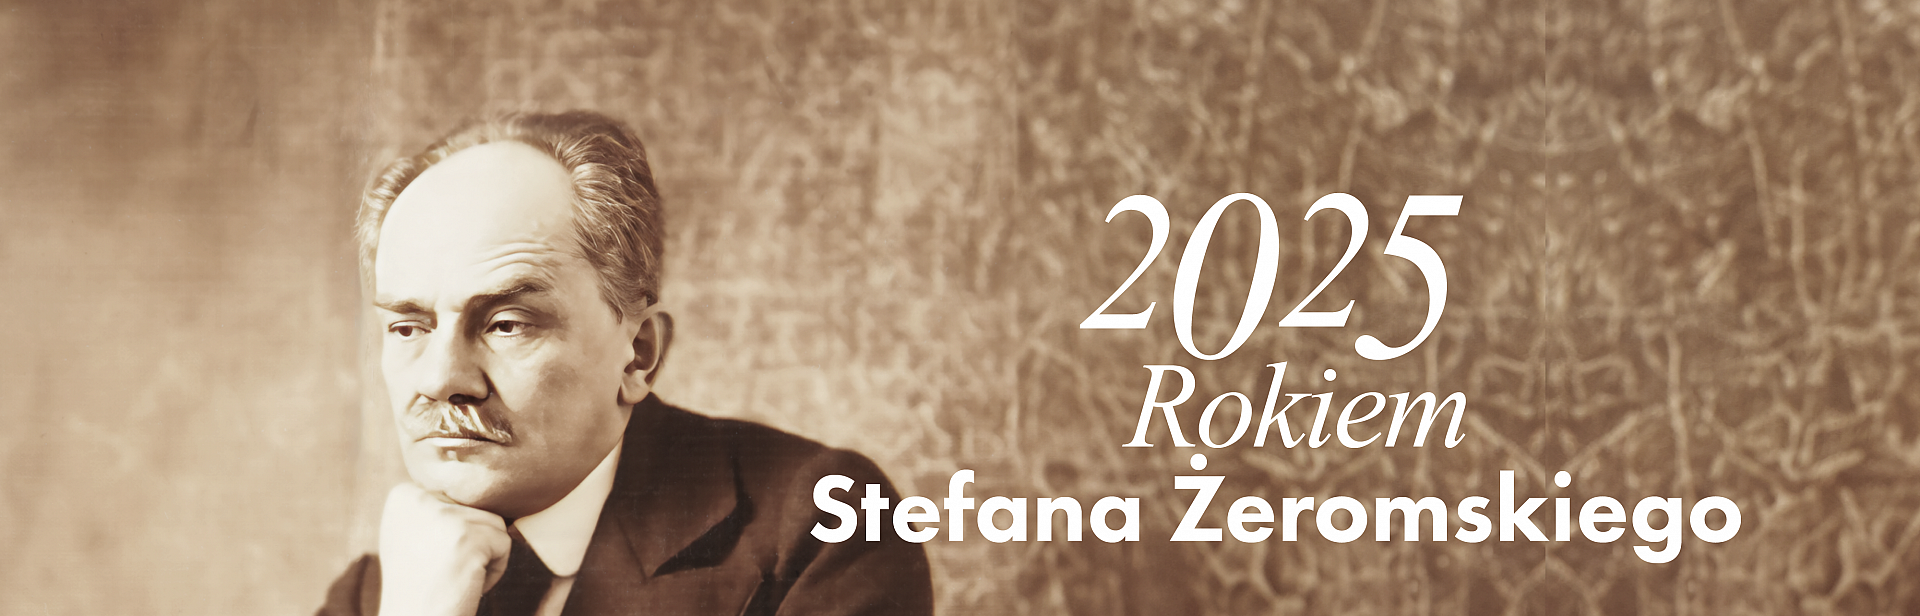 2025 Rokiem Stefana Żeromskiego